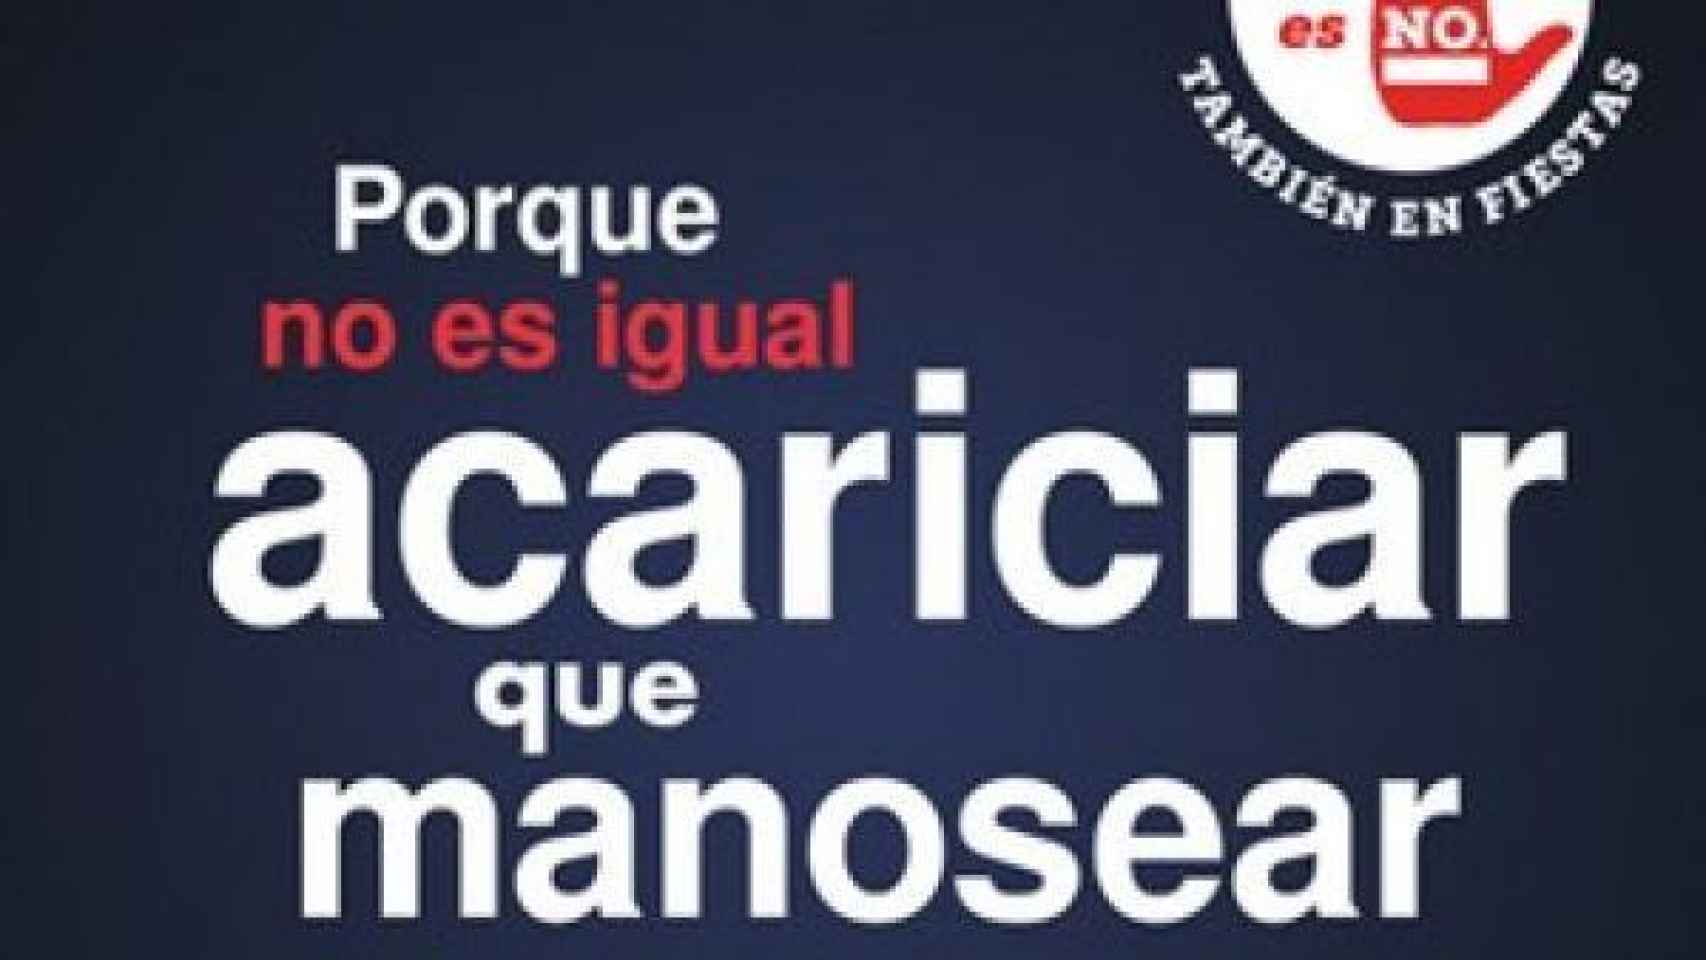 El cartel de la campaña 'No es no' del Ayuntamiento de Zaragoza